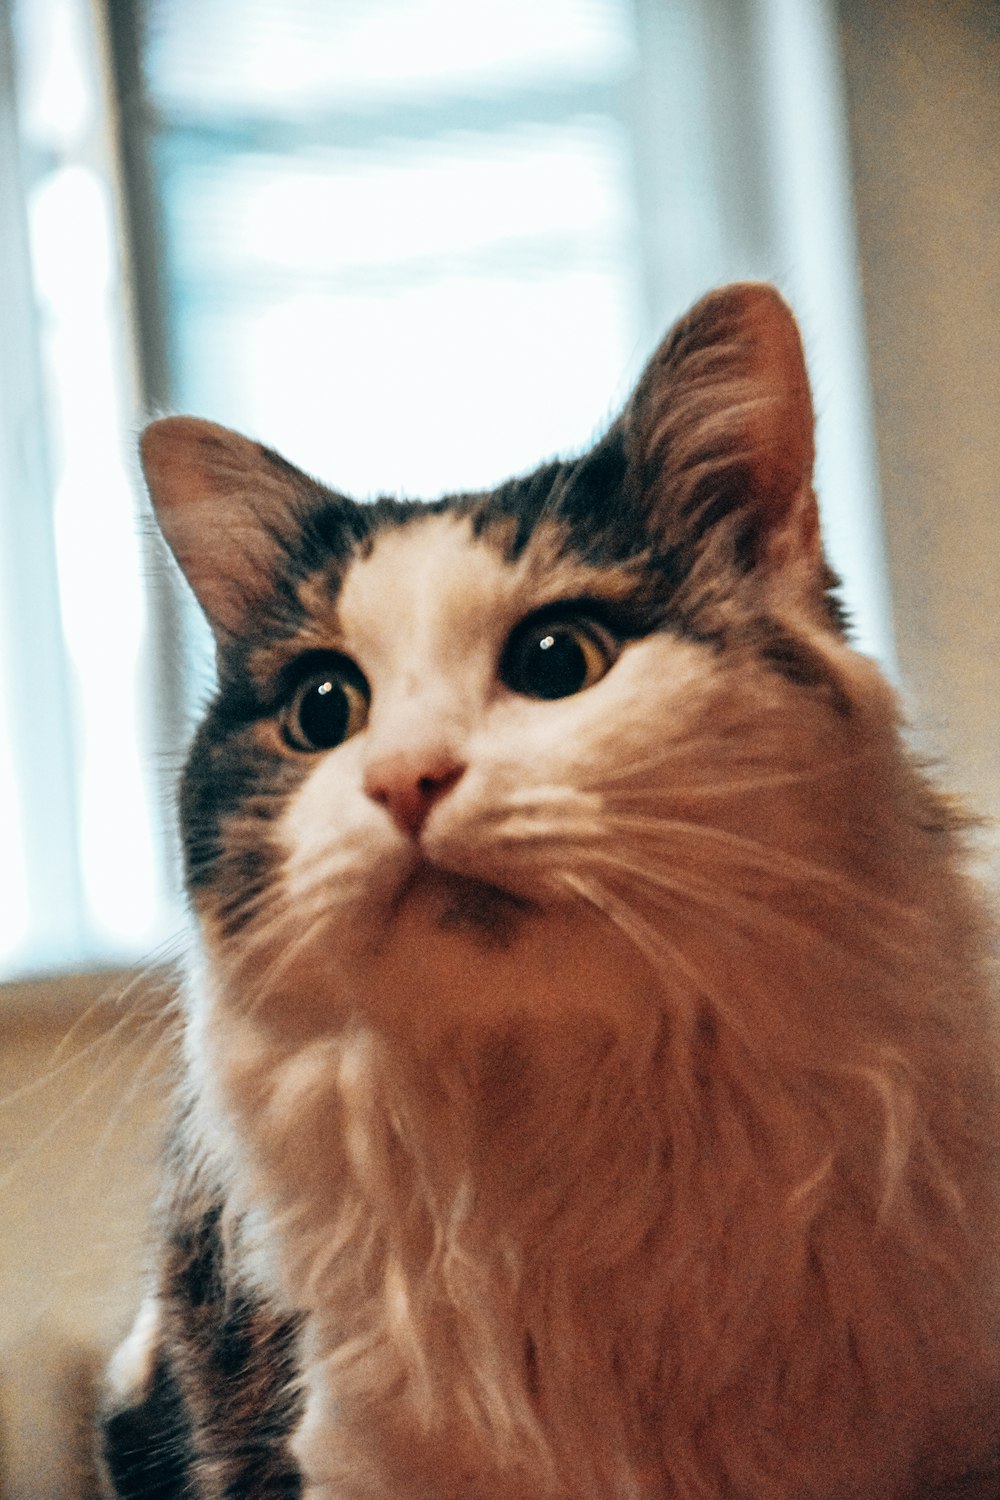 a close up of a cat near a window